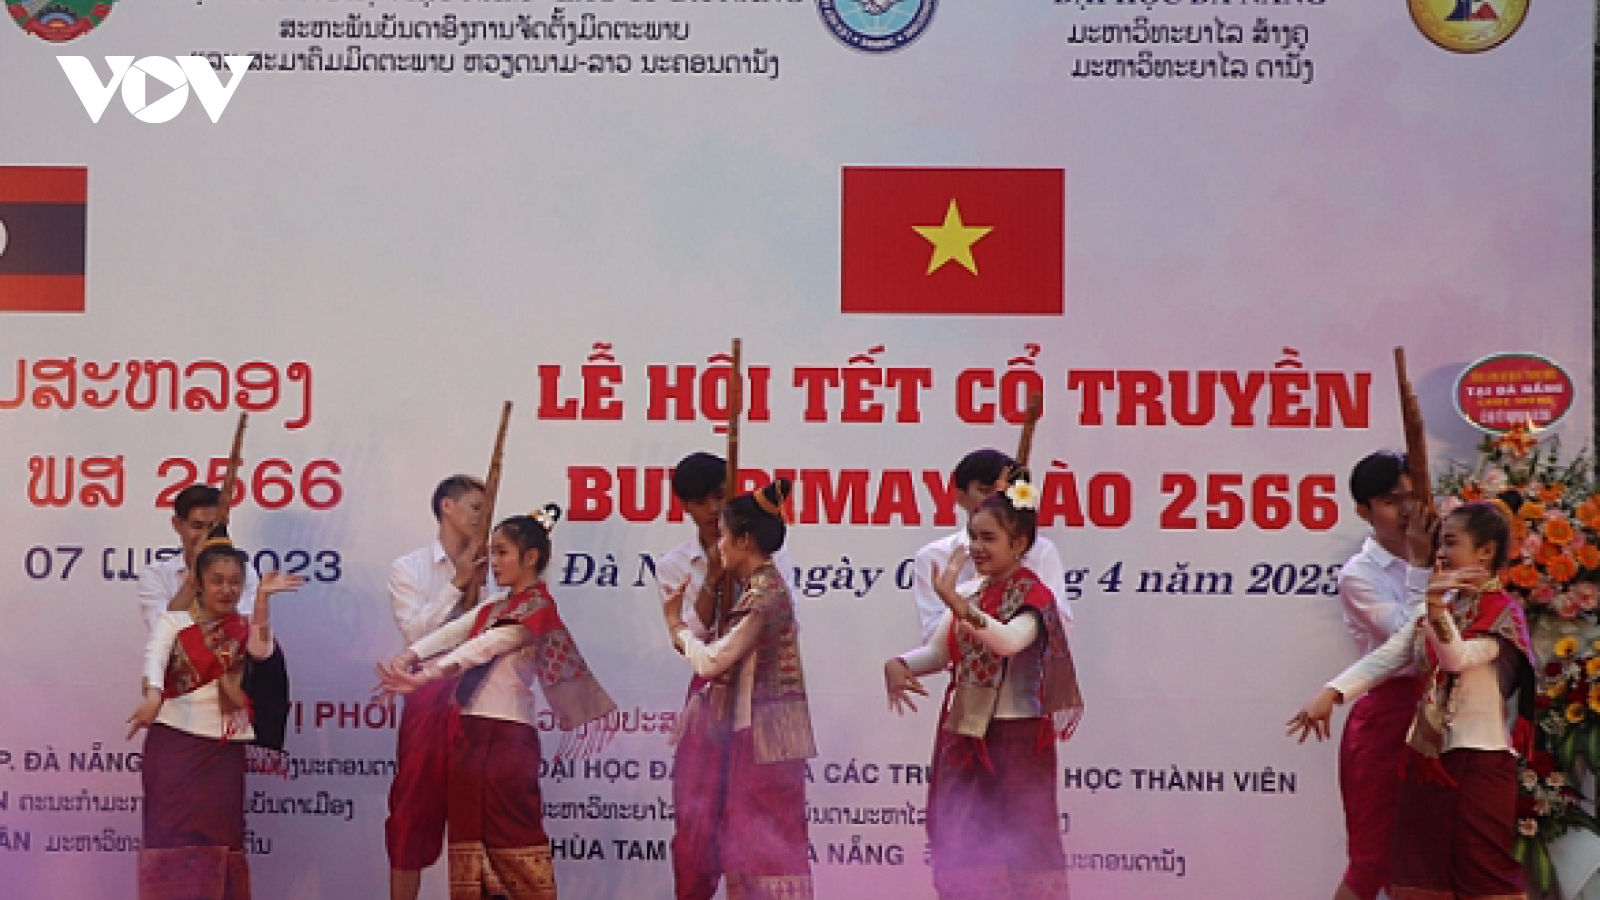 Lễ hội Tết cổ truyền Bunpimay Lào 2566 tại Đà Nẵng